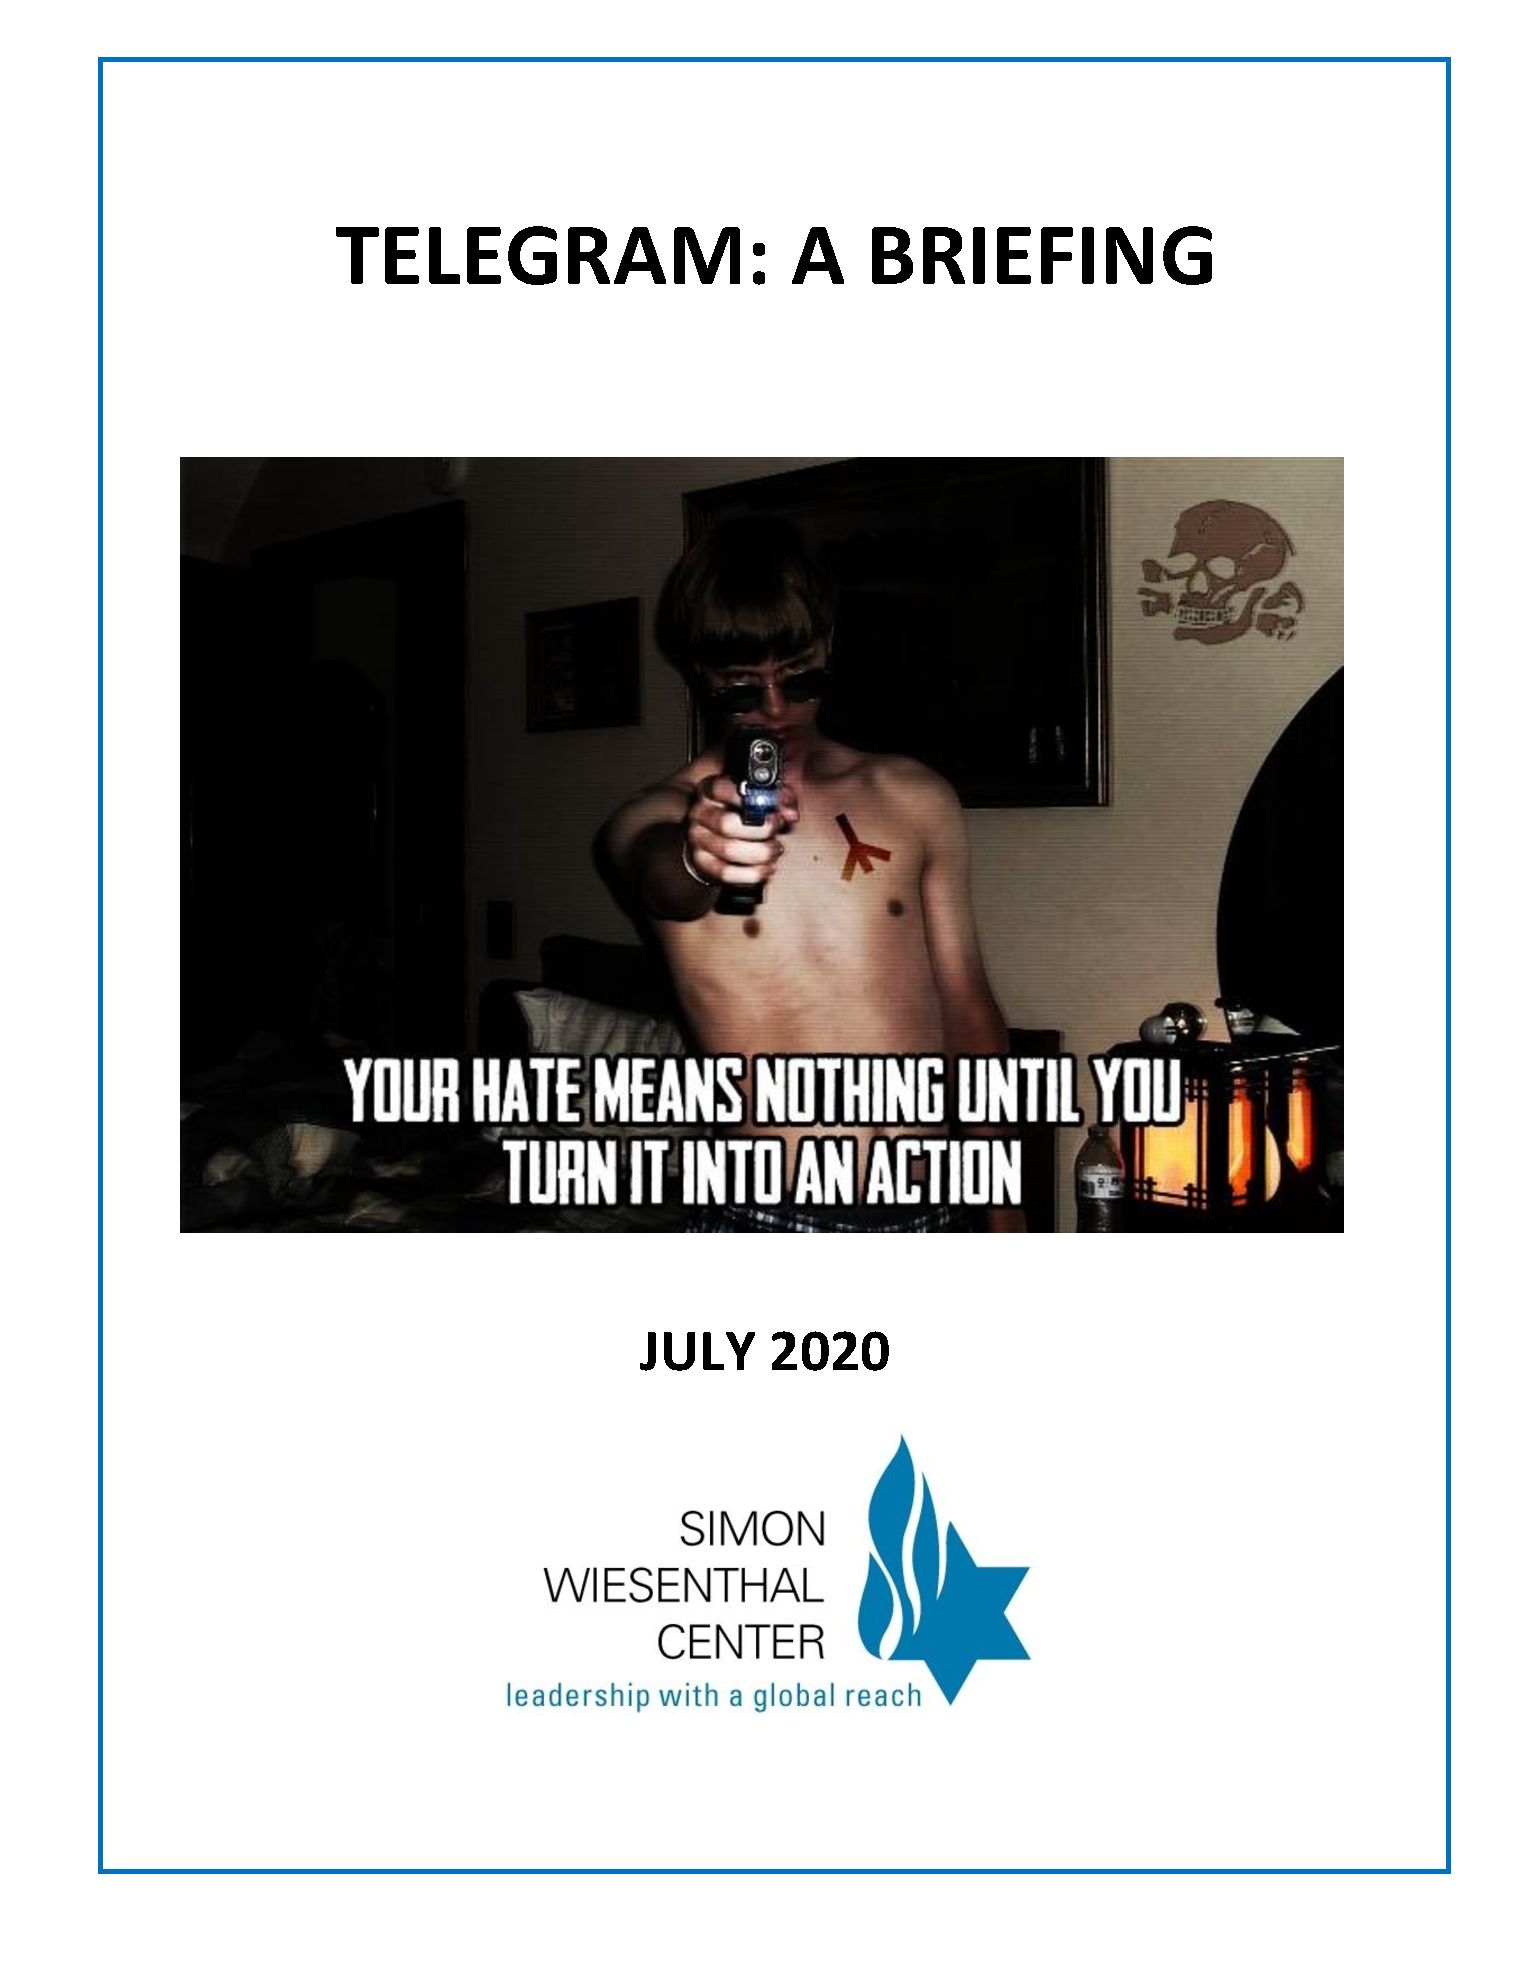 swc-telegram-briefing-july